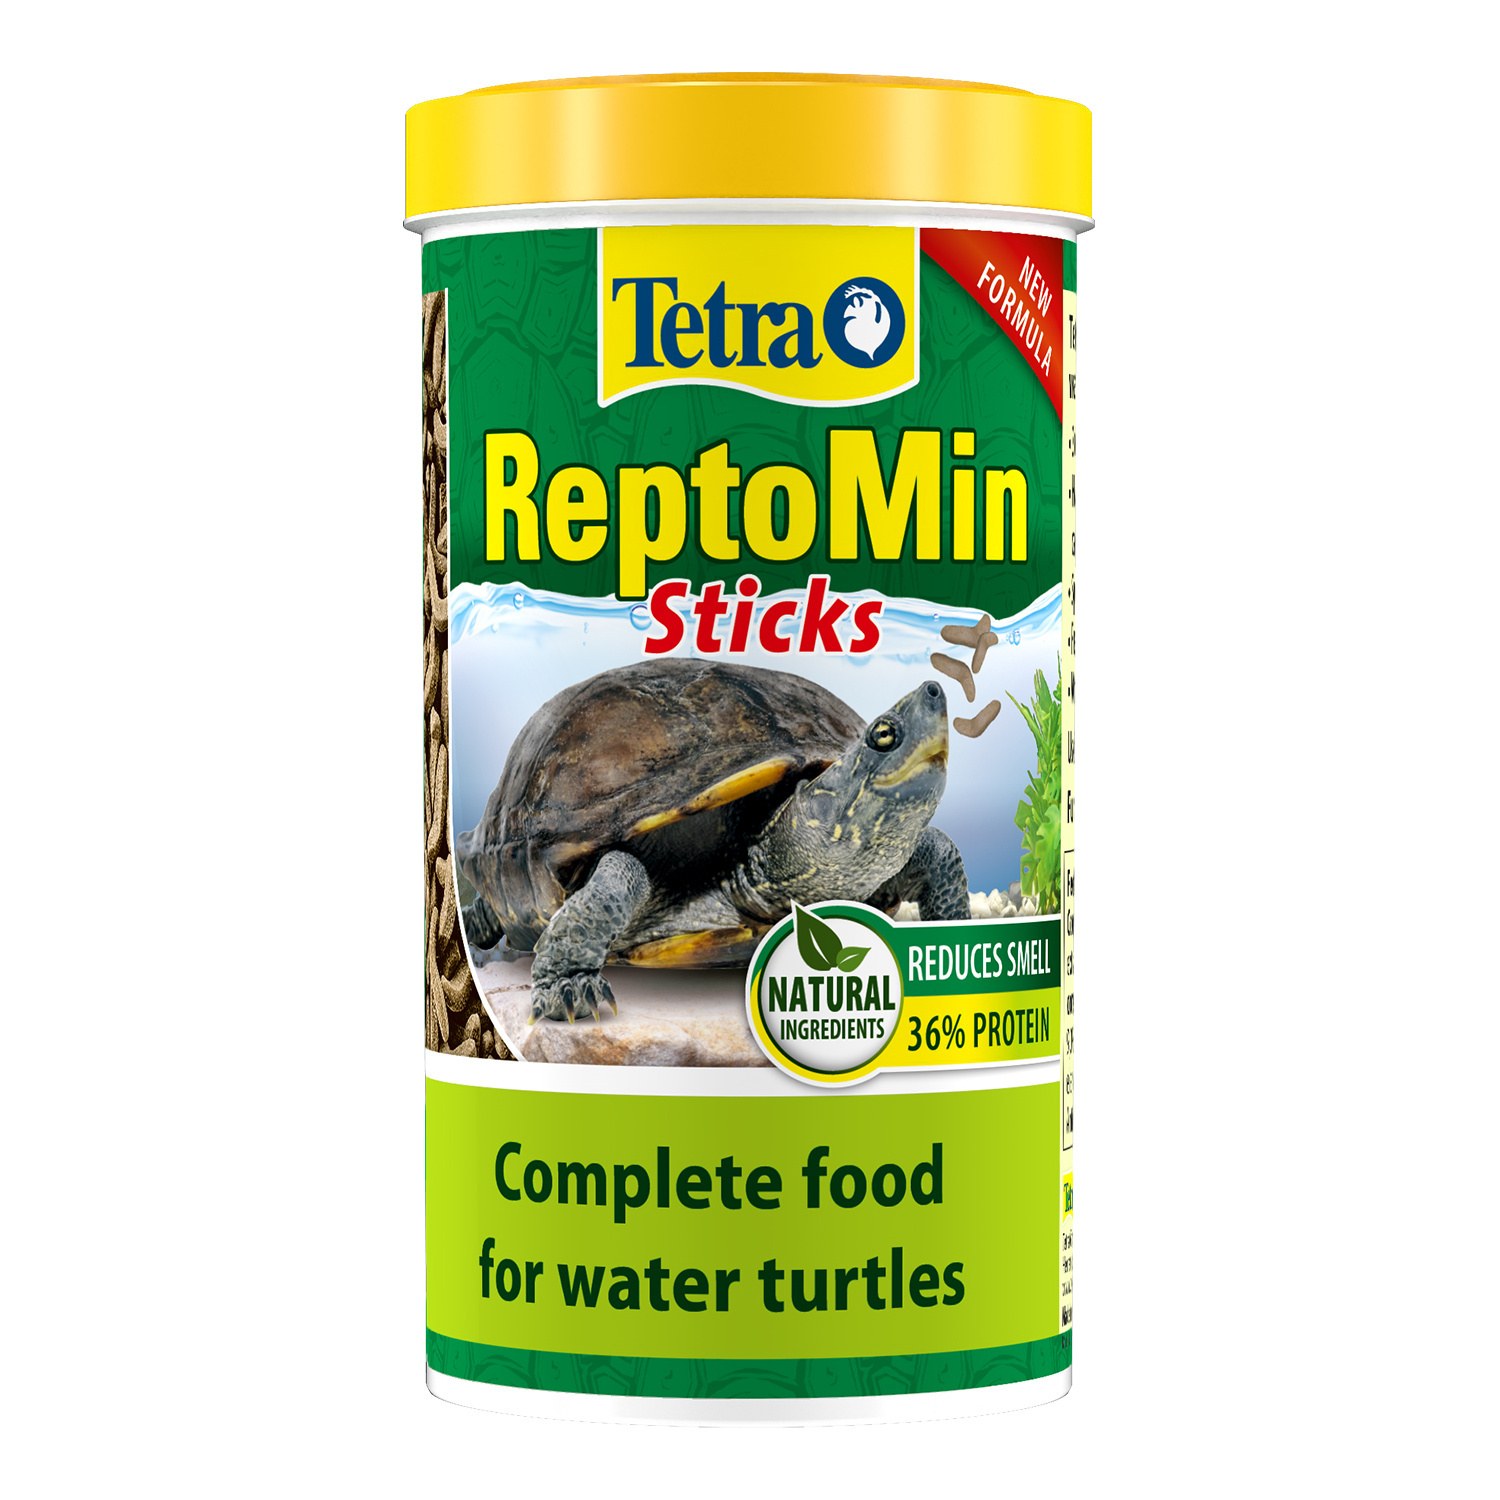 Tetra (корма) Tetra (корма) корм для водных черепах ReptoМin (130 г) tetra корма tetra корма корм для красных попугаев шарики 110 г